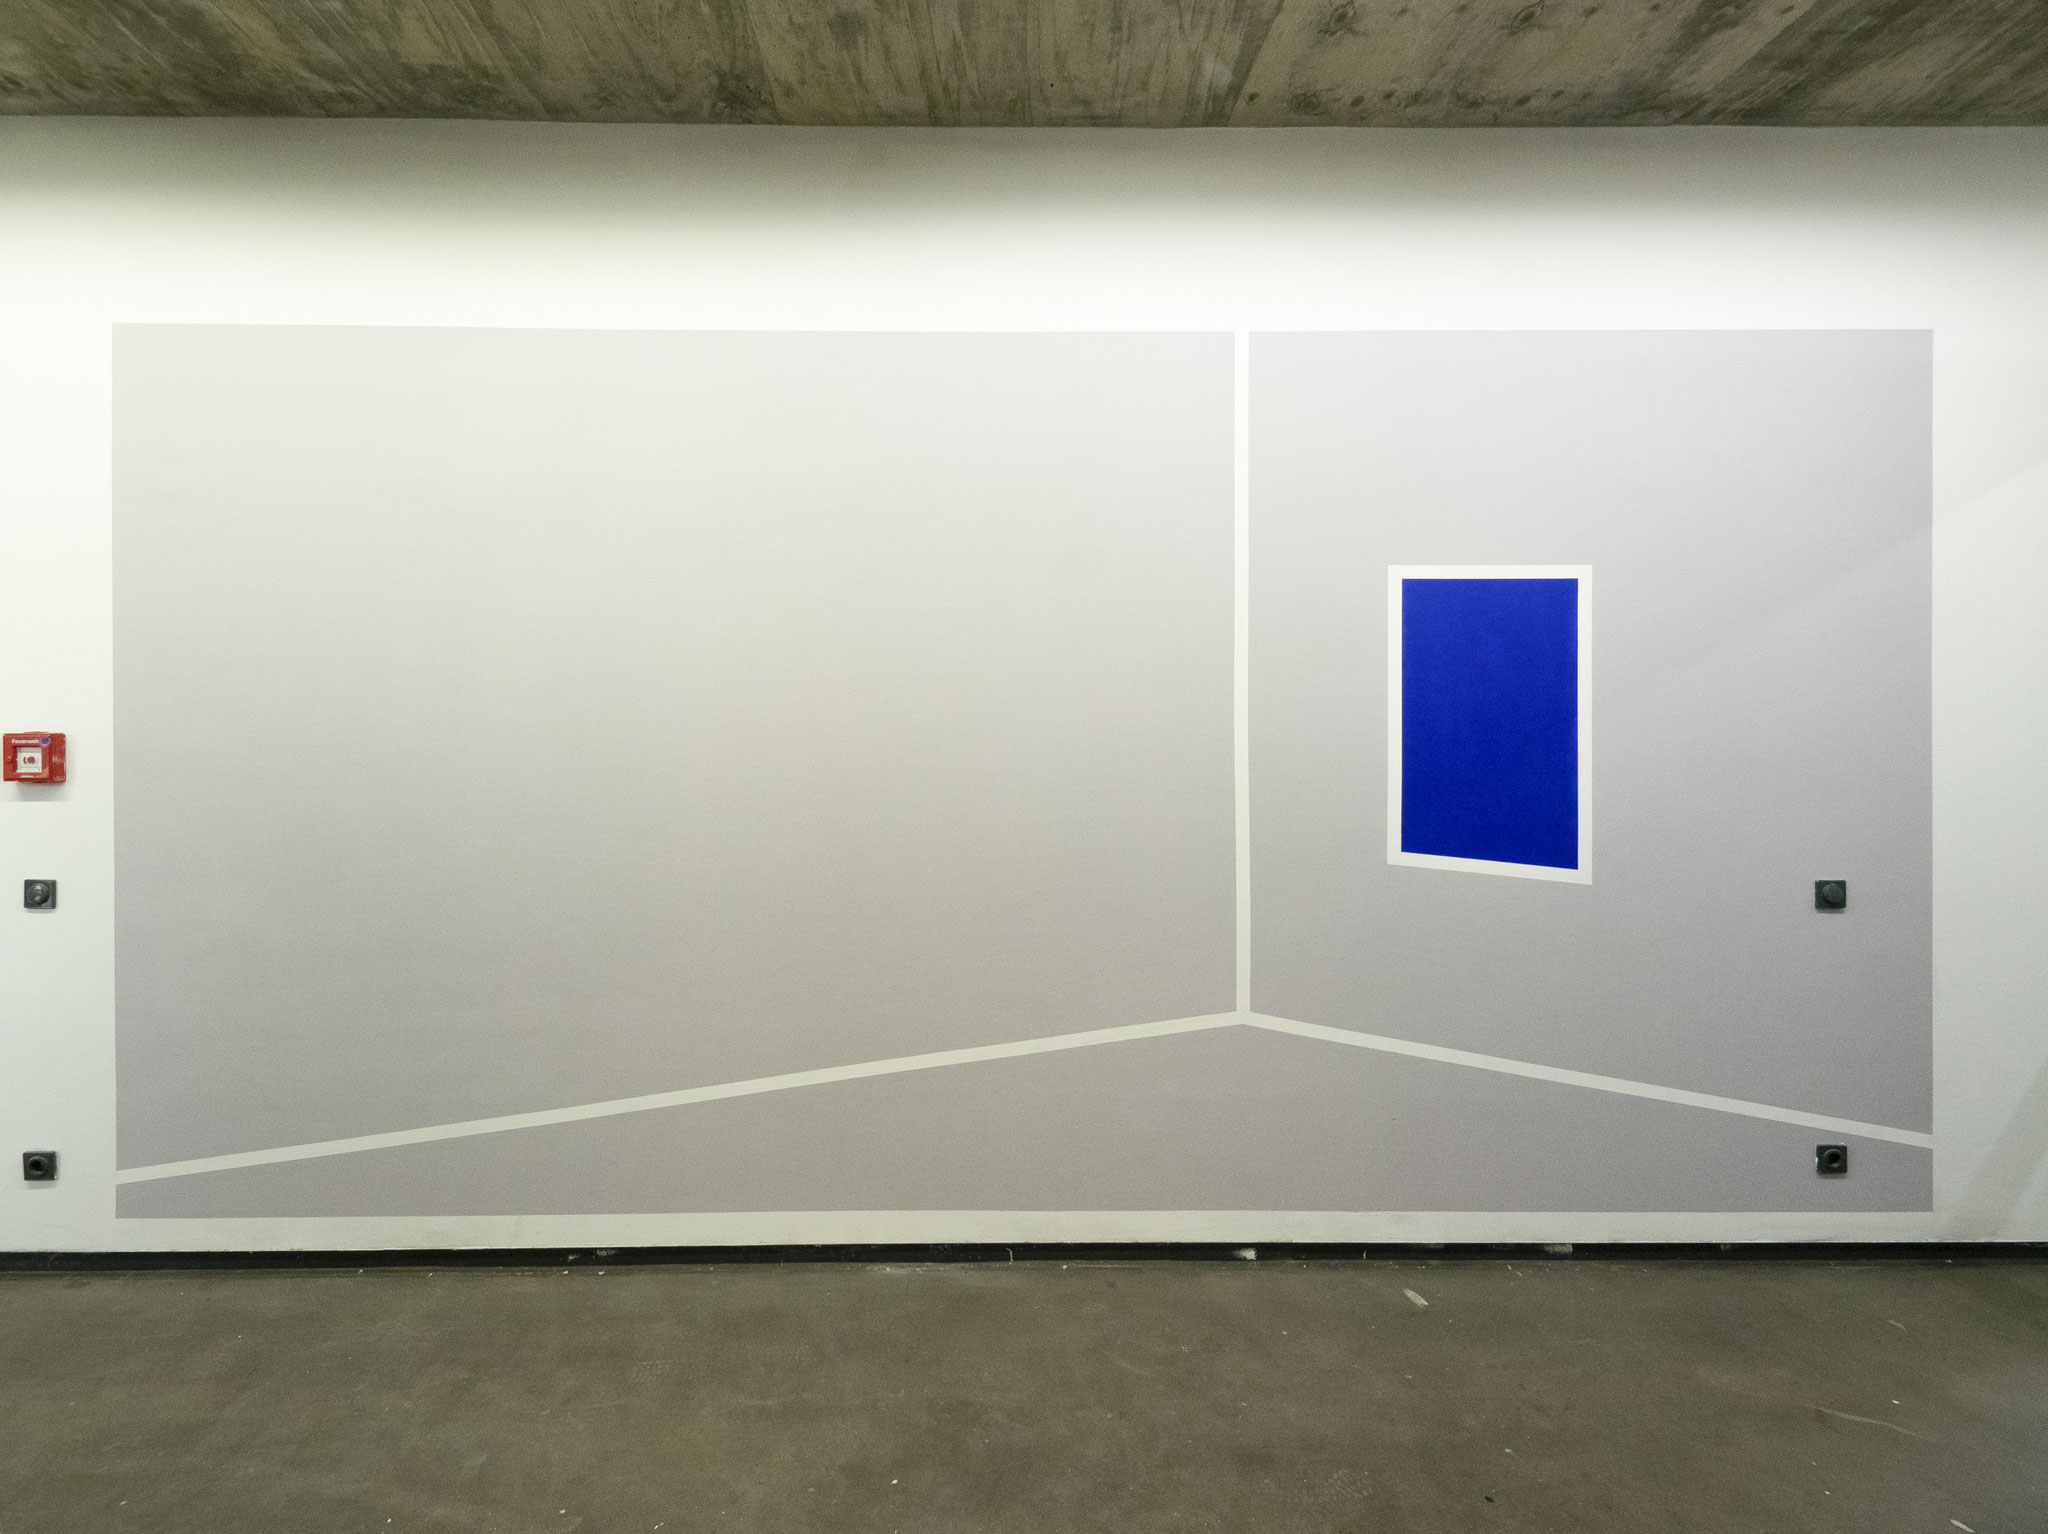 Zimmer mit Meerblick, Wandfarbe/Acryl auf Putz, 280 x 390cm, 2019